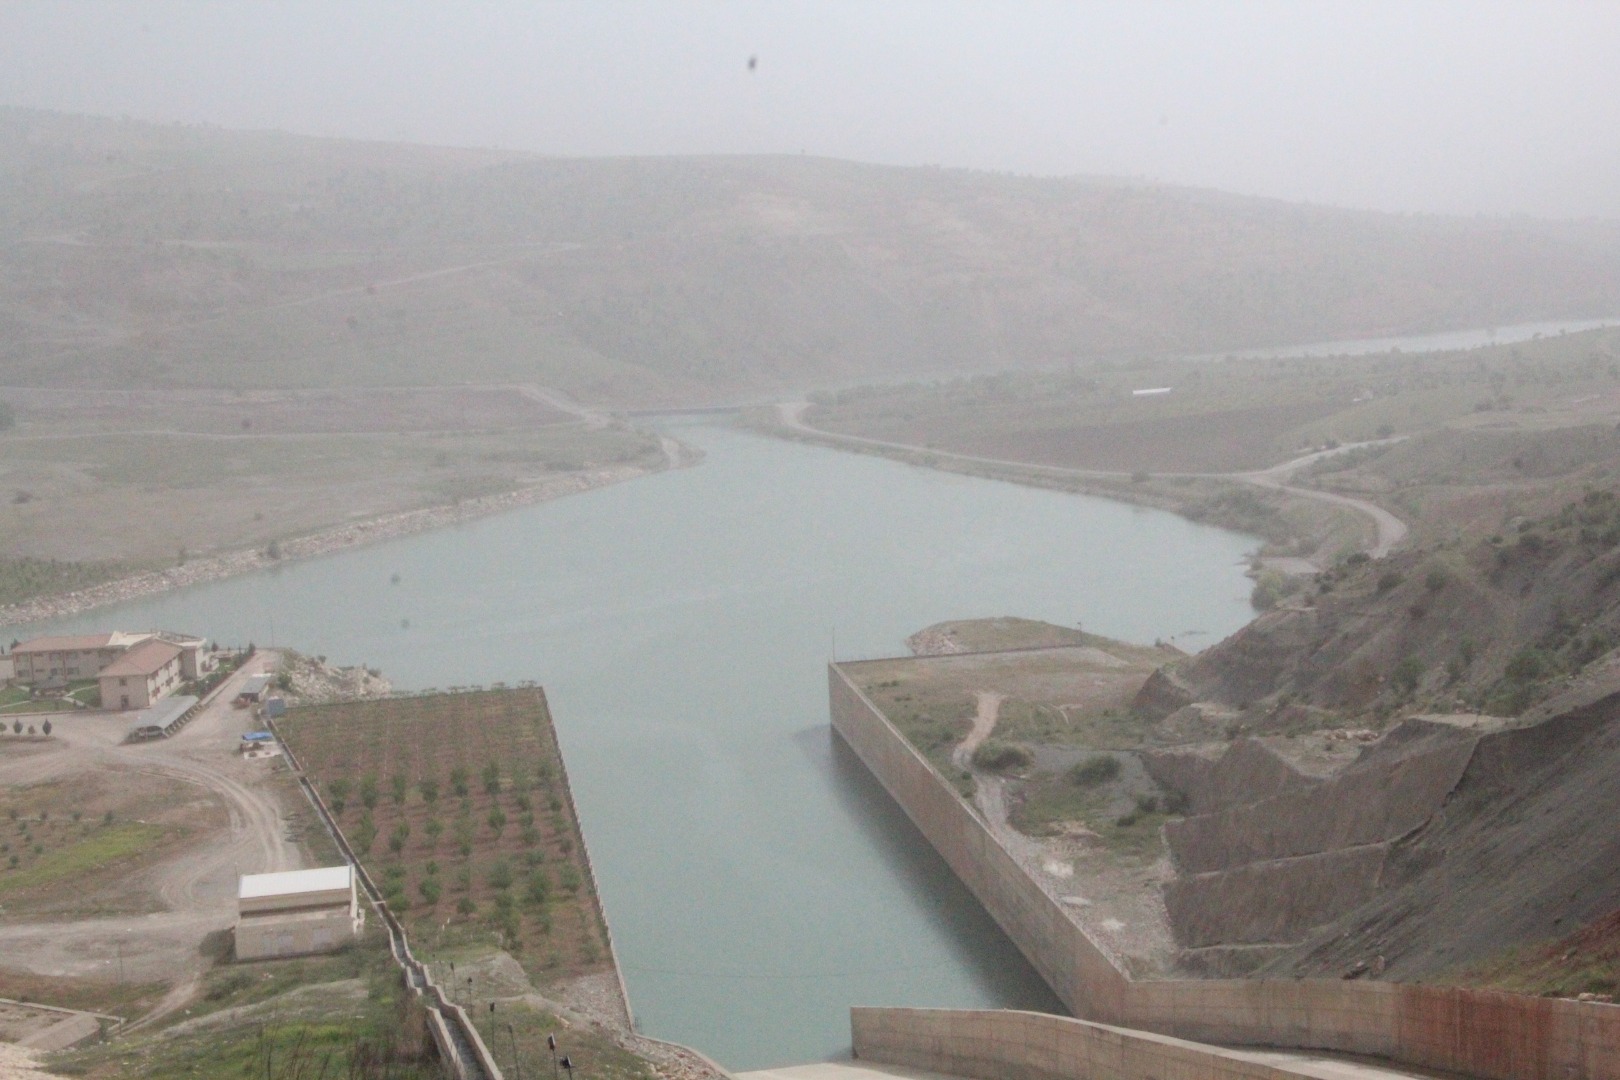 Alkumru Barajı'nda doluluk yüzde 70’e ulaştı